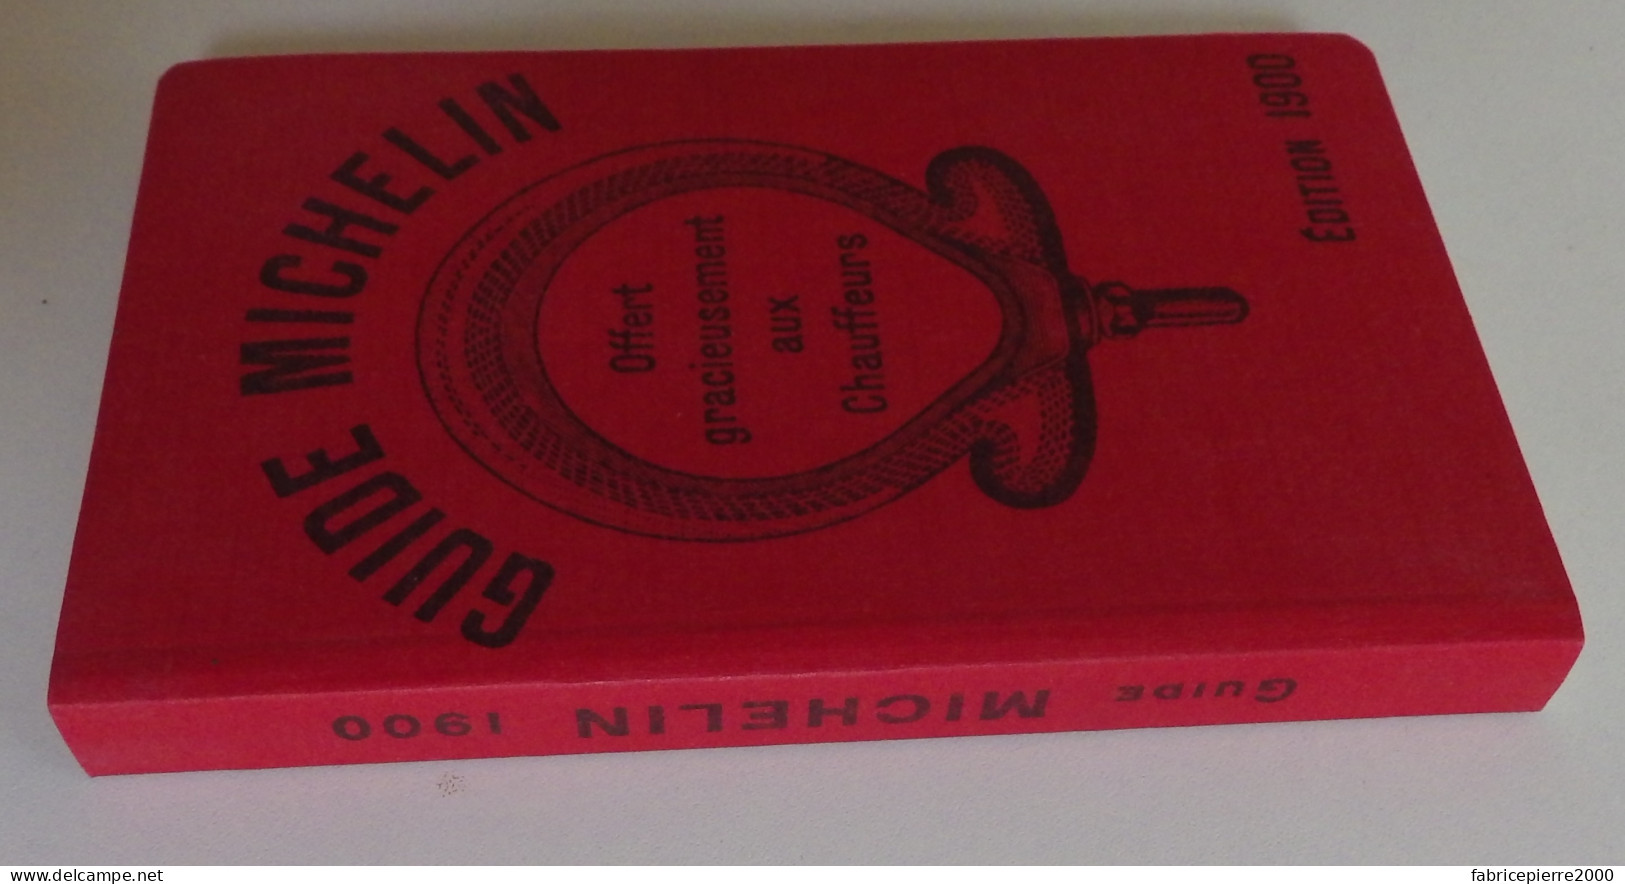 MICHELIN - Guide Offert Gracieusement Aux Chauffeurs édition 1900 Réédition TBE Avec Son Présentoir - Michelin-Führer